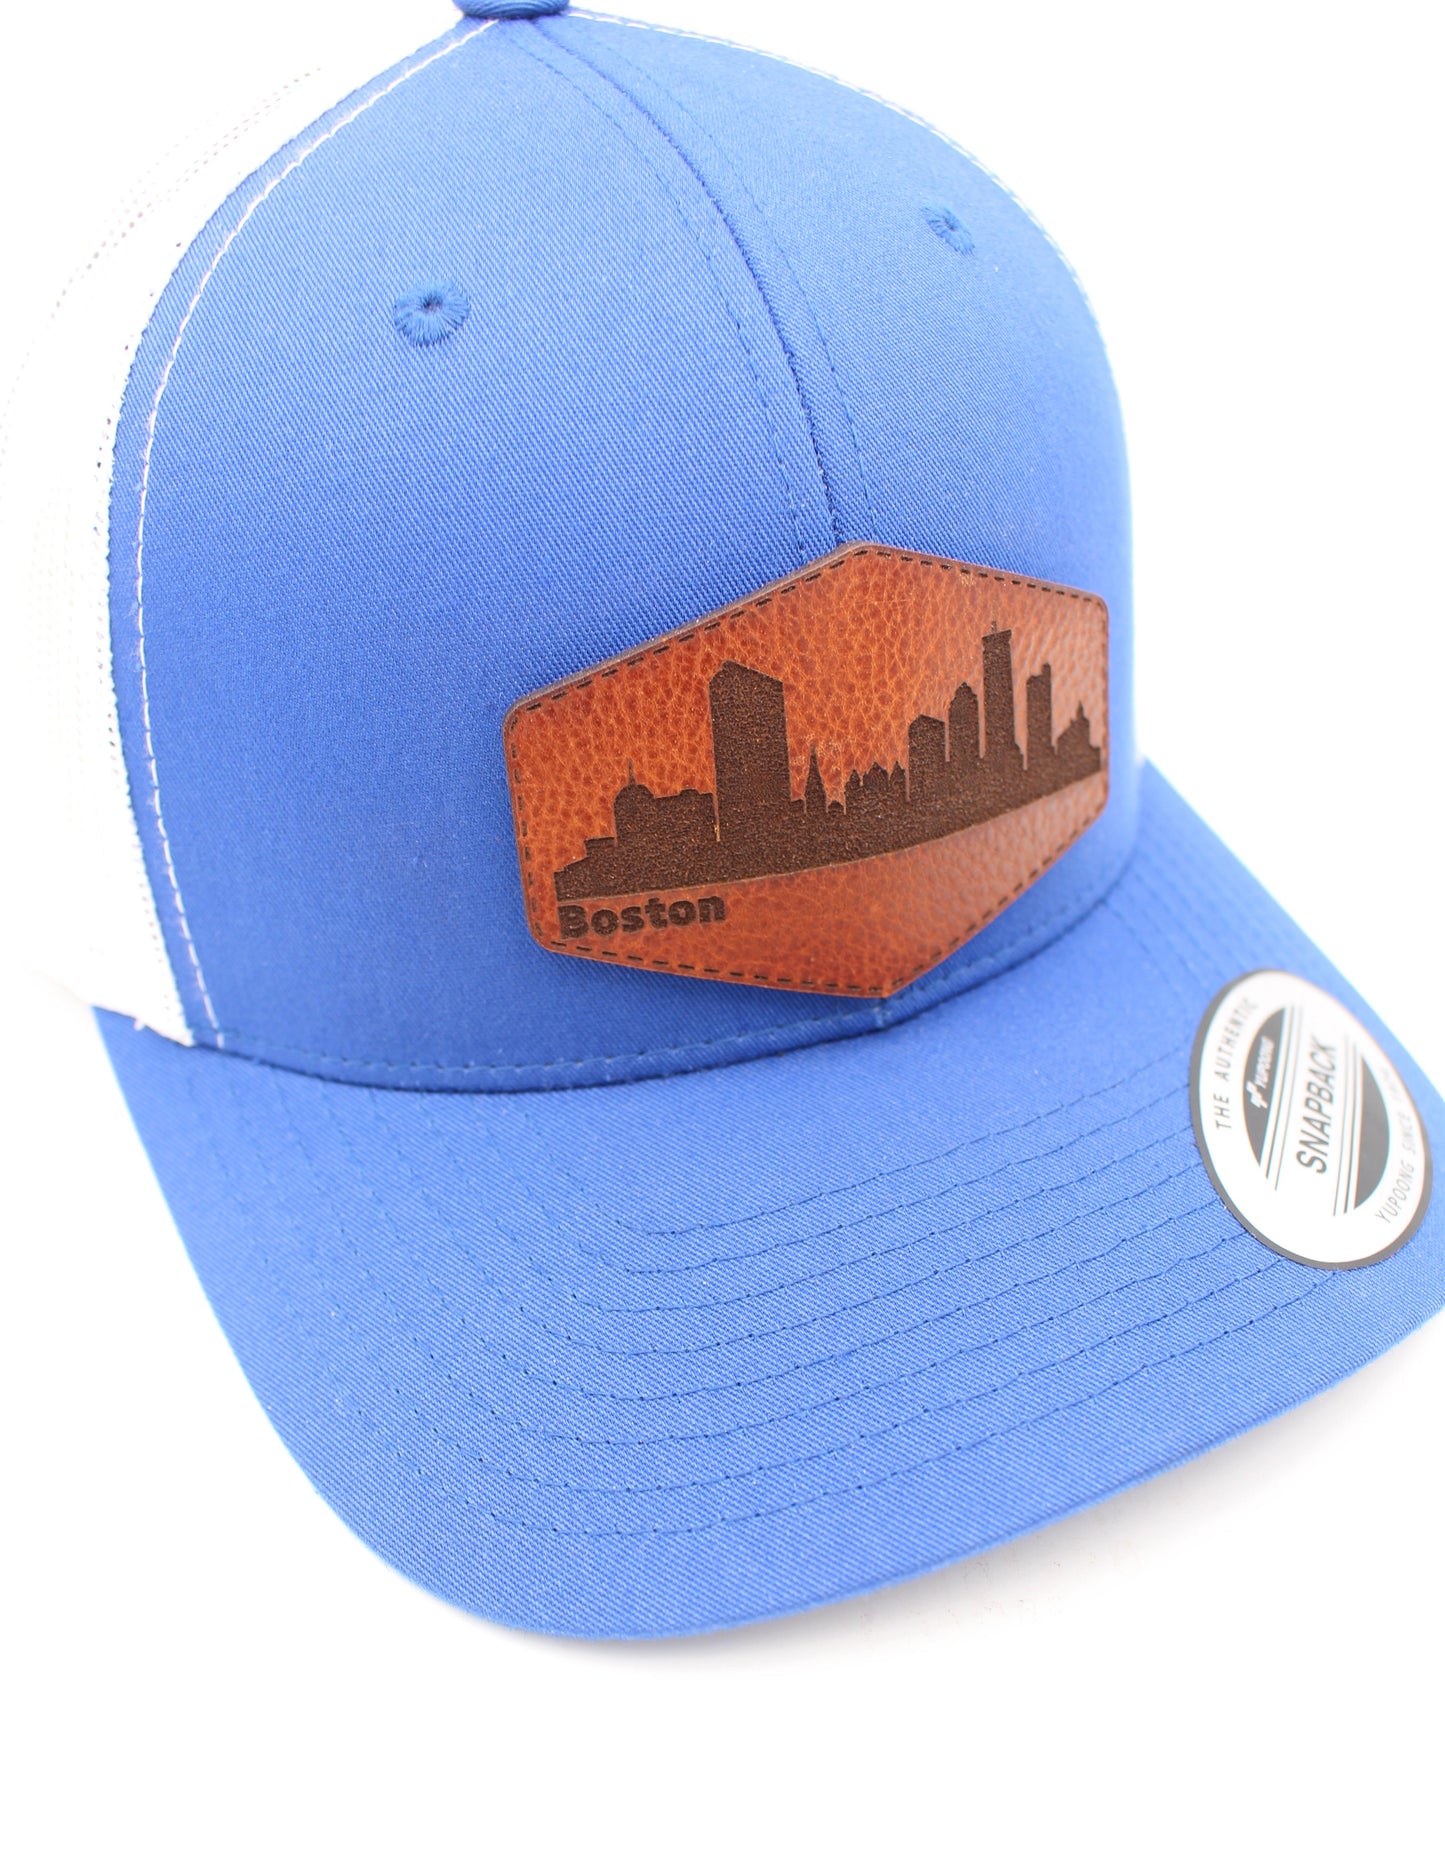 City of Boston Skyline Trucker Snapback Hat